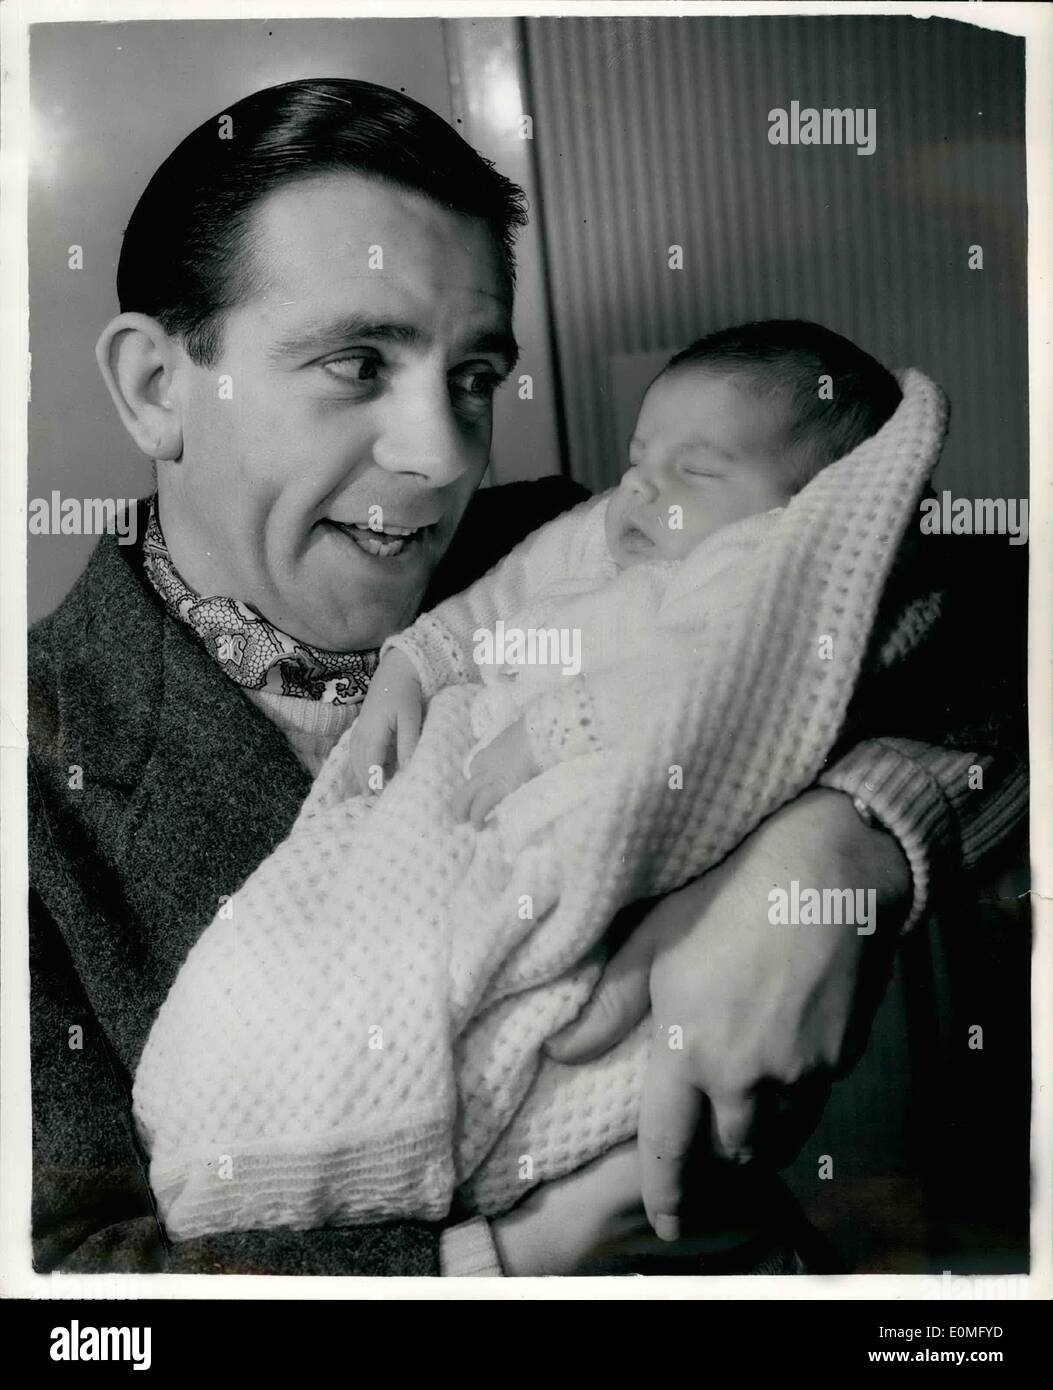 Gen 01, 1955 - Norman saggezza e Baby Jacqueline: La foto mostra il famoso comico, Norman Sapienza, visto come egli teneramente tiene la sua bambina, Jacqueline - al suo Barnet home. Foto Stock